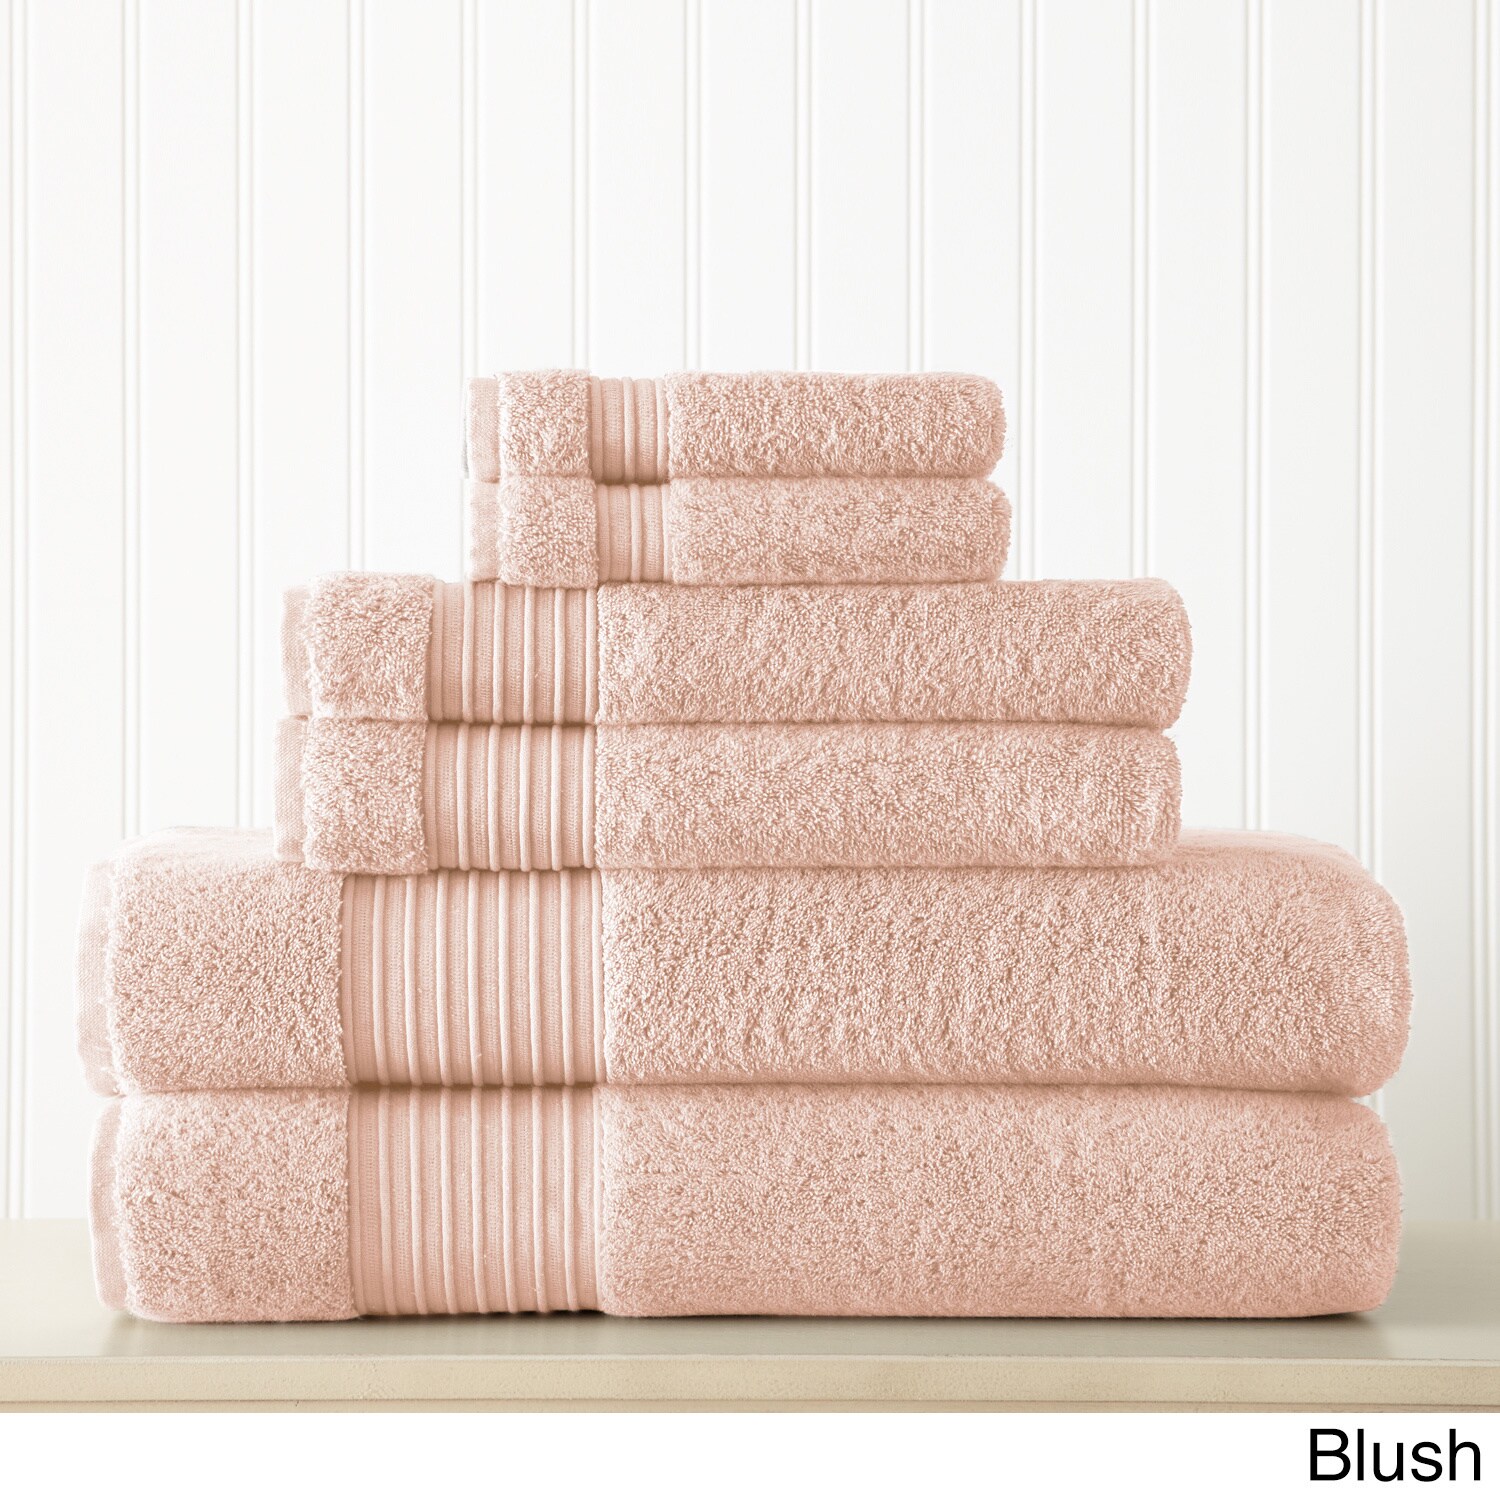 Luxury Bath Towel Set 100% Cotton 2 Pack Bath Towels 700 GSM Light